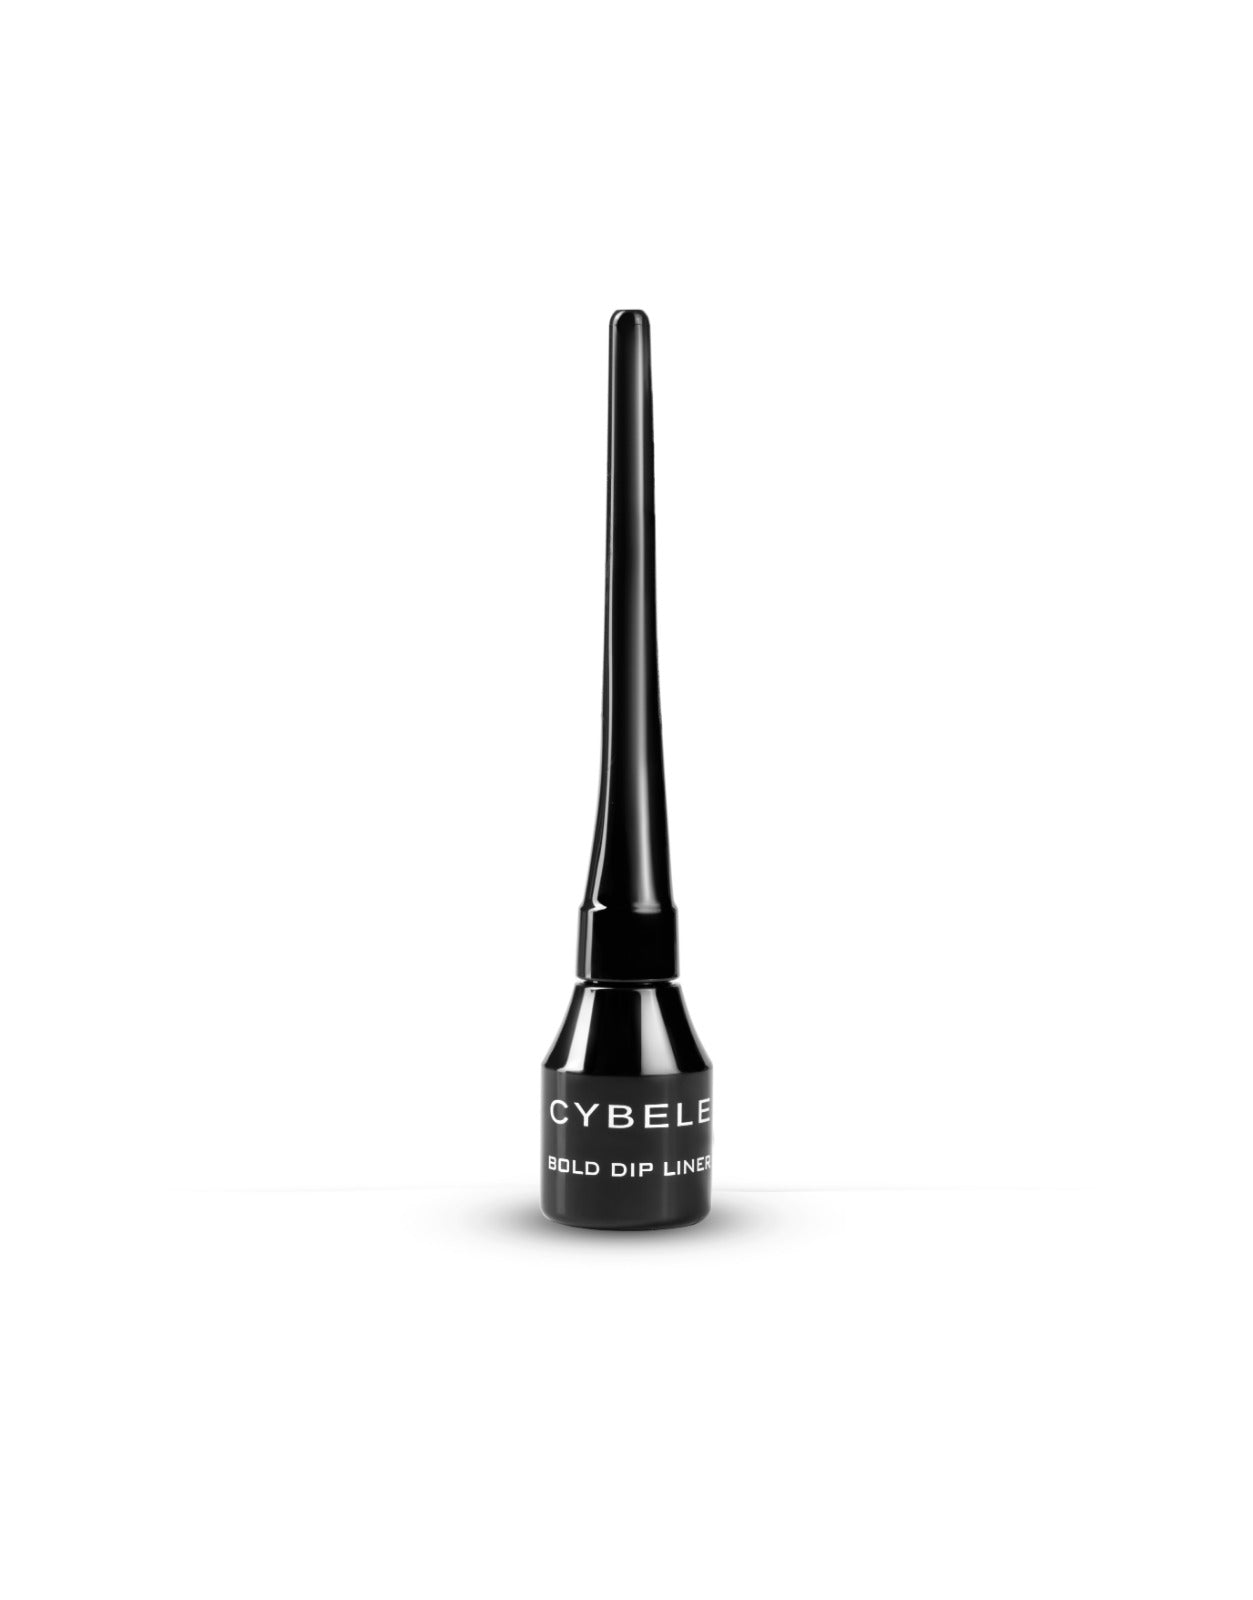 Cybele Bold Dip Liner No. 1 Black